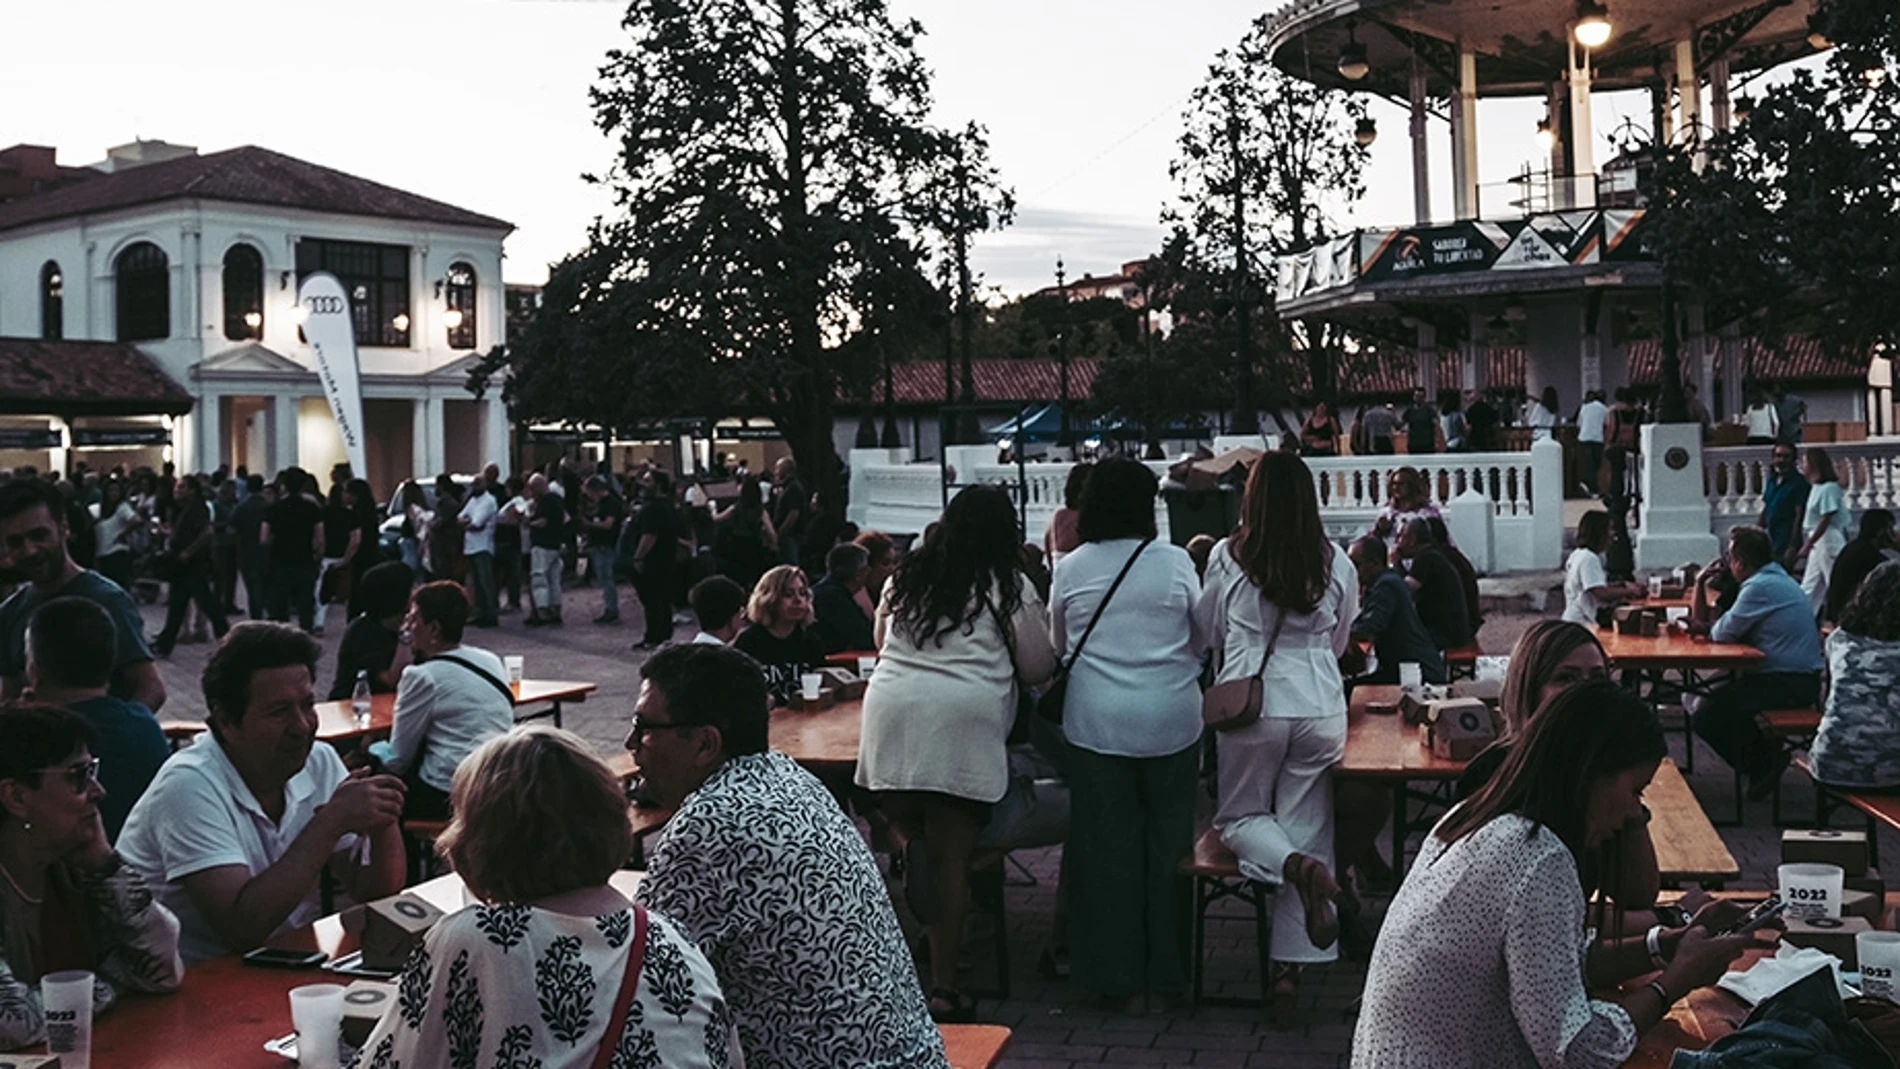 Antorchas Festival : música, gastronomía y cultura en Albacete